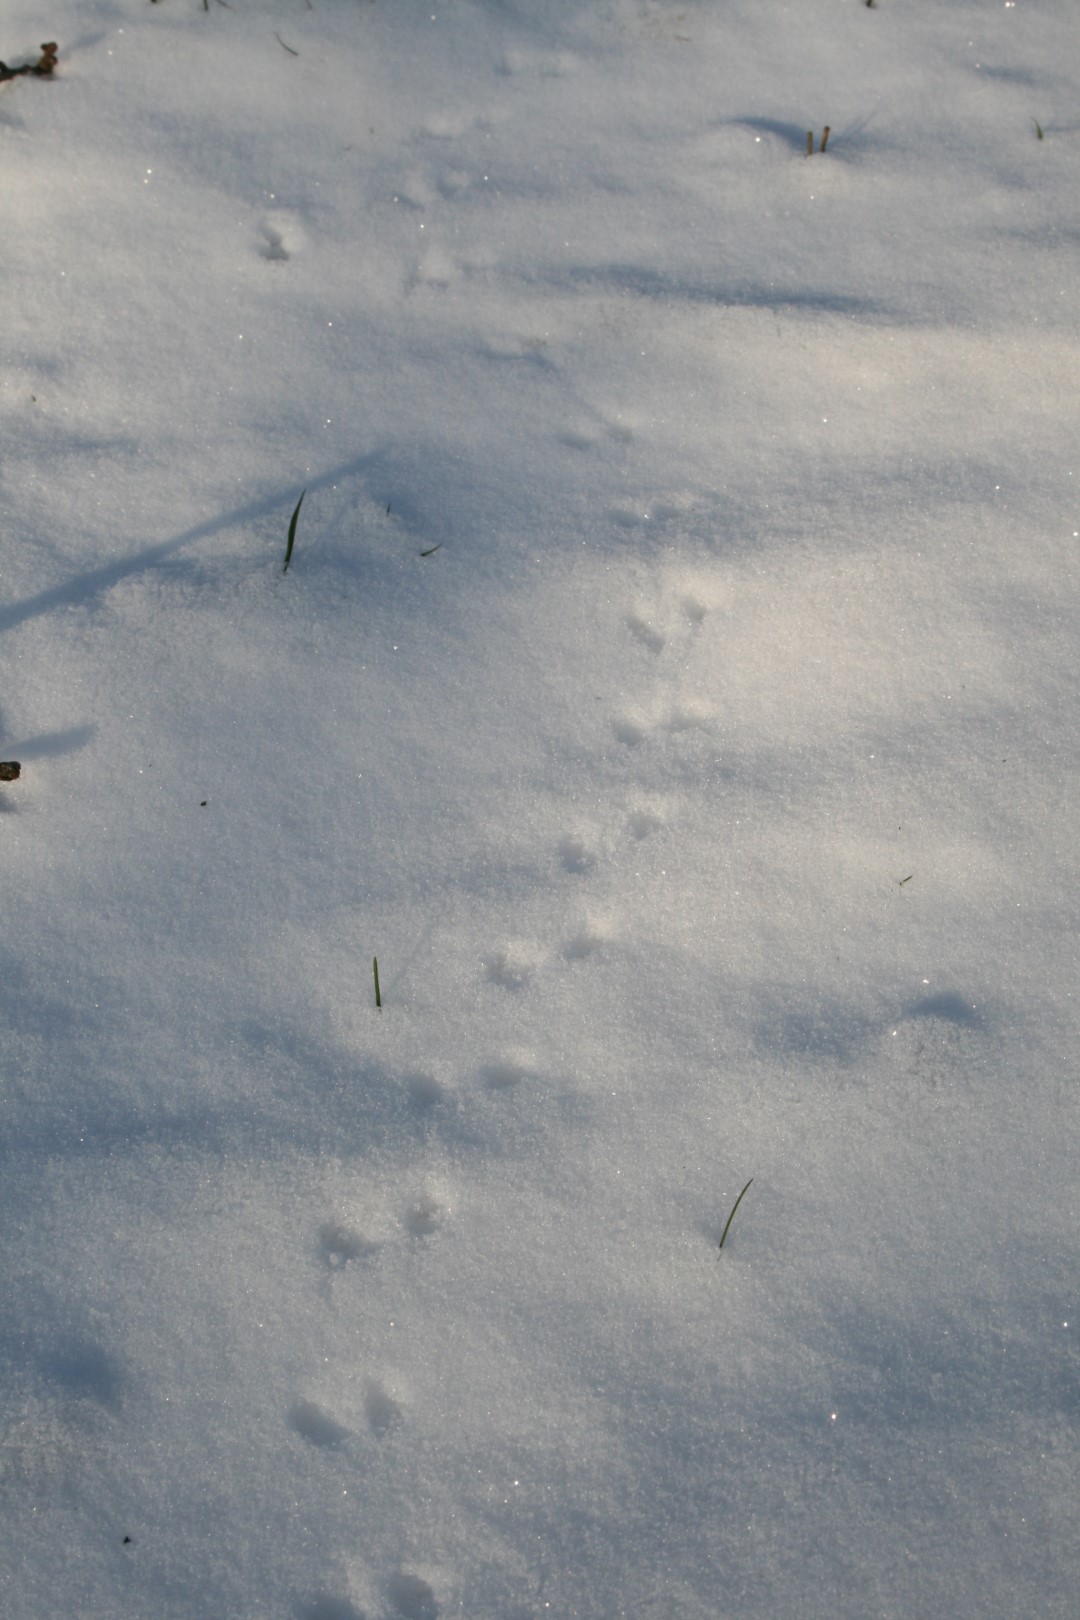 spor i sneen efter mus